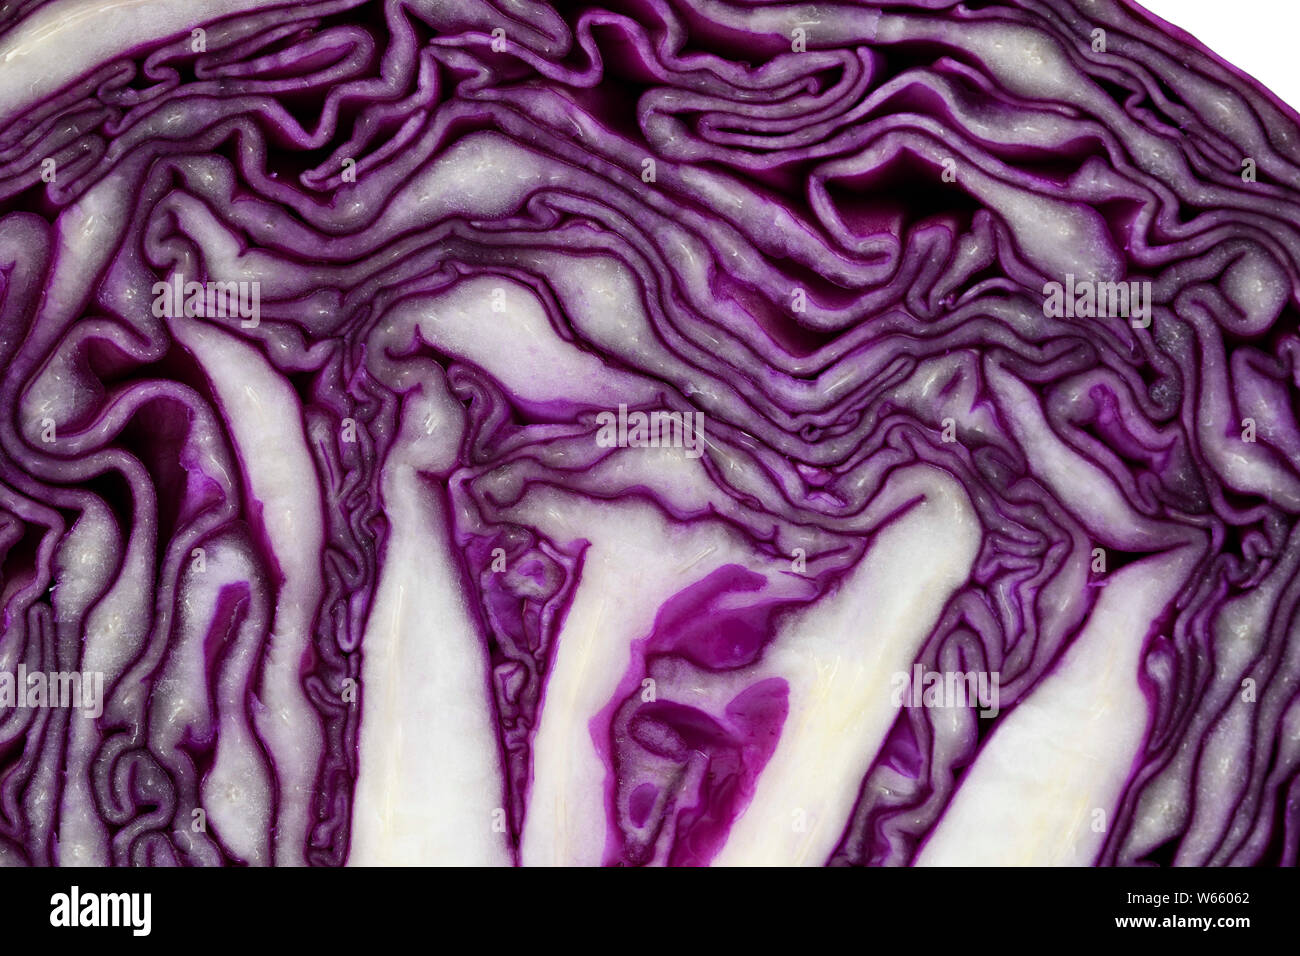 red cabbage, Brassica oleracea convar. capitata var. rubra Stock Photo